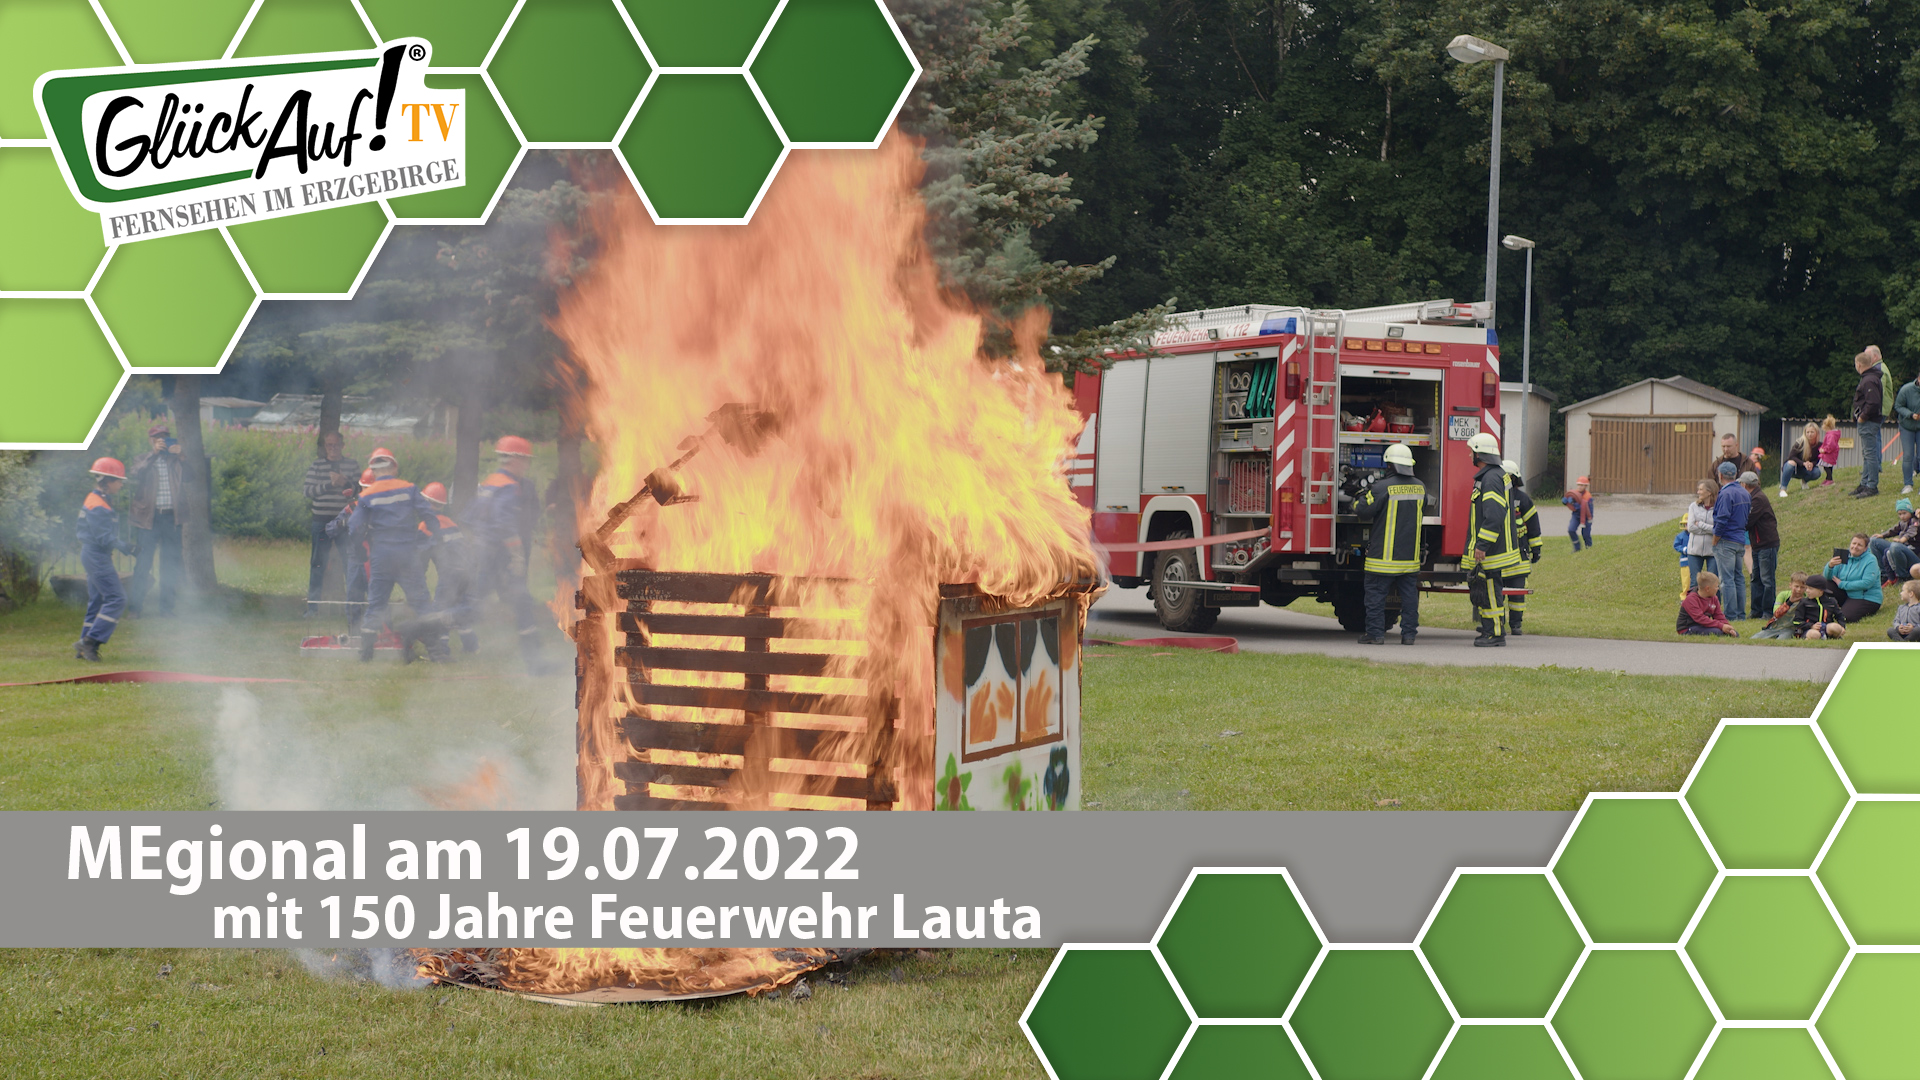 MEgional am 19. Juli 2022 - mit den Feierlichkeiten zu 150 Jahre Feuerwehr in Lauta